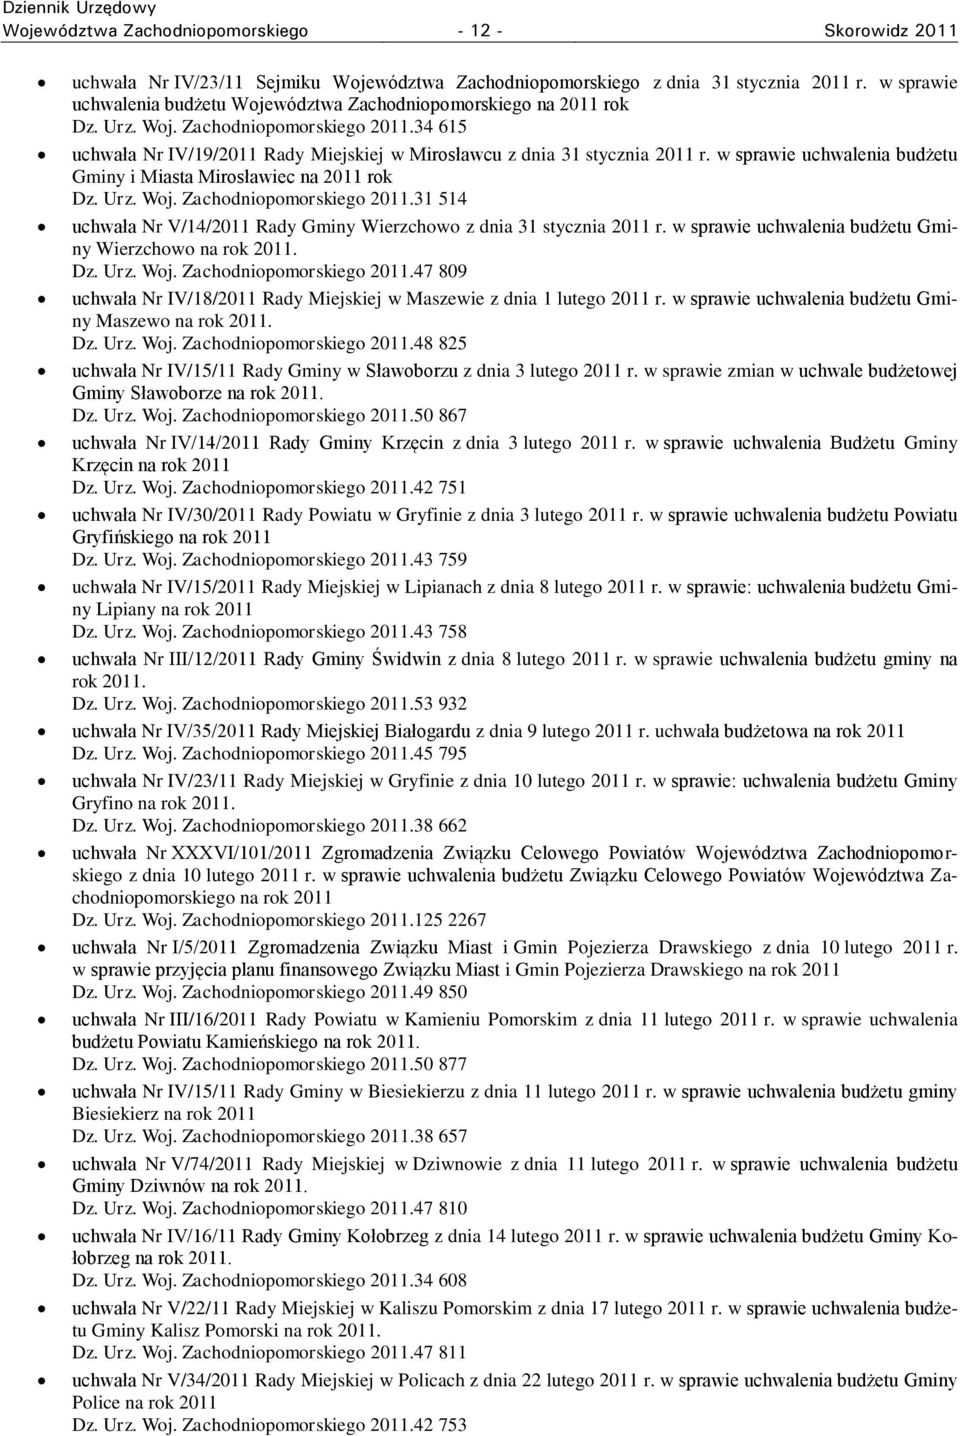 w sprawie uchwalenia budżetu Gminy i Miasta Mirosławiec na 2011 rok Dz. Urz. Woj. Zachodniopomorskiego 2011.31 514 uchwała Nr V/14/2011 Rady Gminy Wierzchowo z dnia 31 stycznia 2011 r.